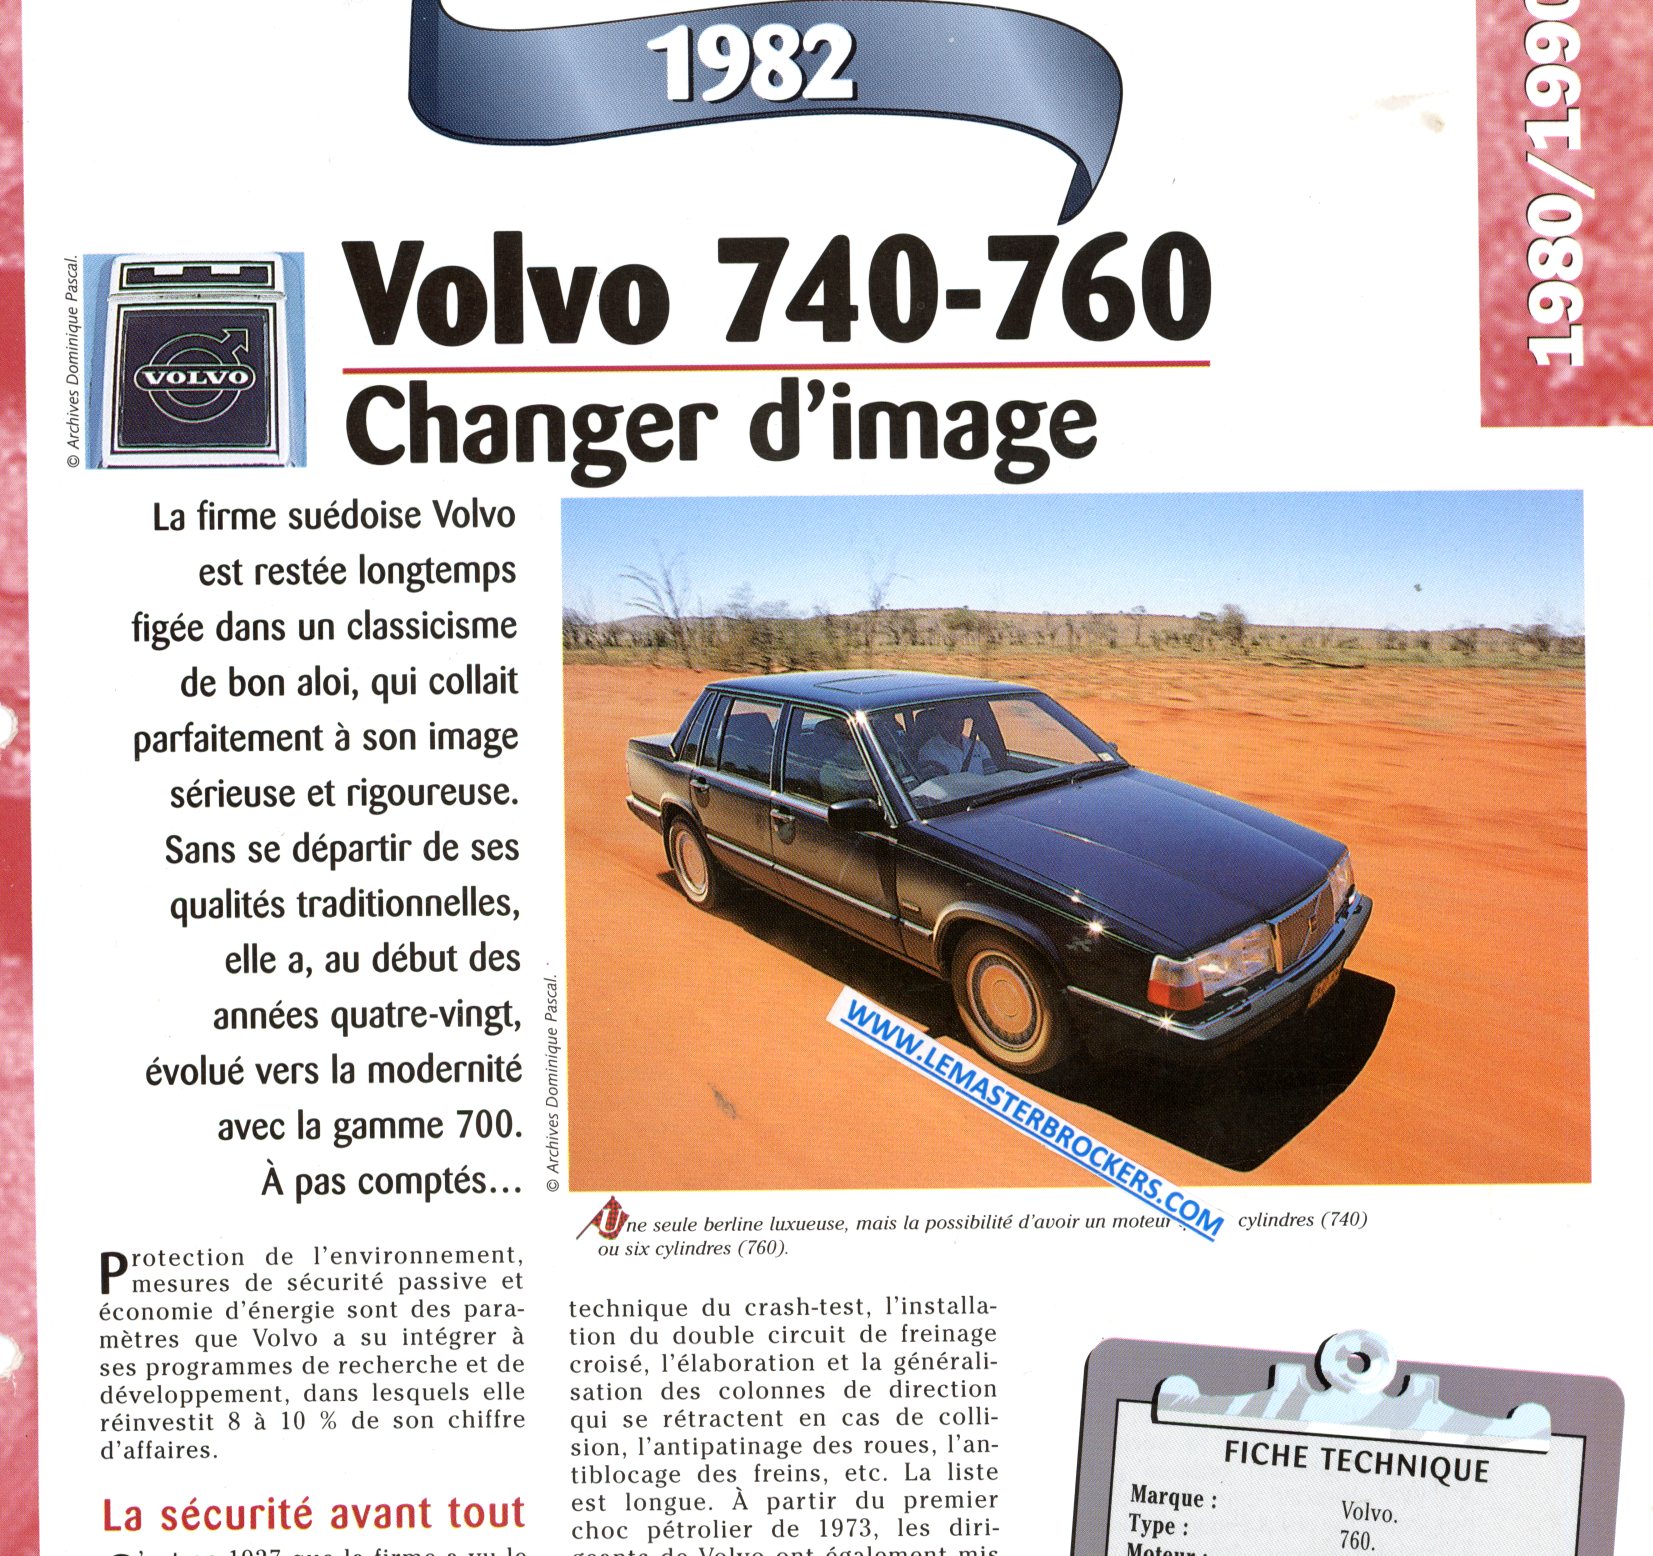 FICHE TECHNIQUE VOLVO 740 760 1982